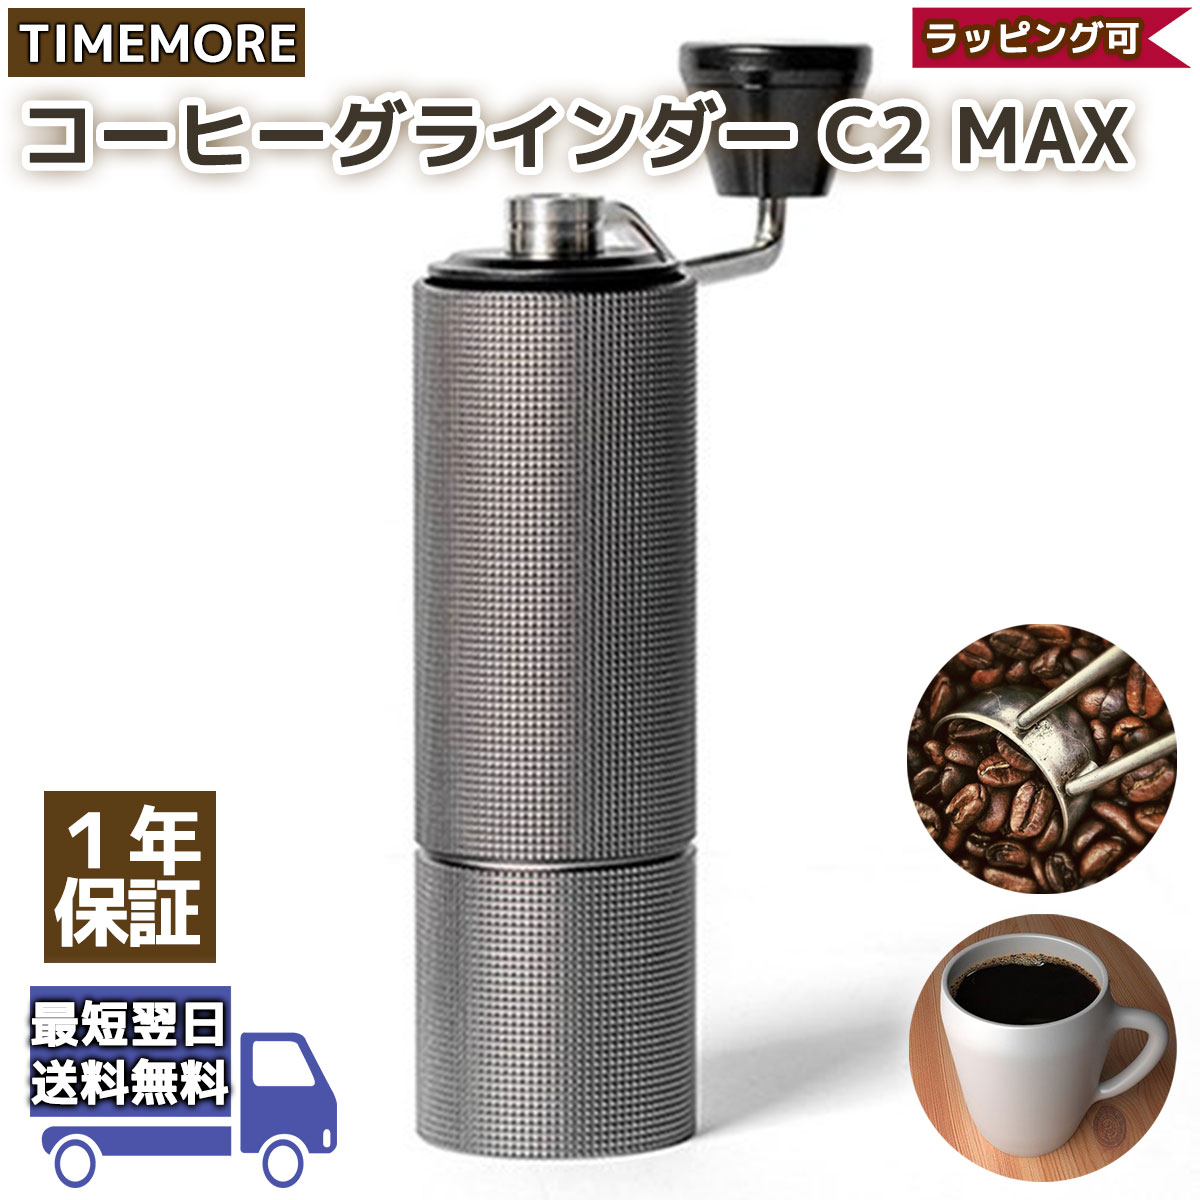 タイムモア C2 Max 手挽き コーヒーミル 手動 TIMEMORE マックス グラインダー 容量30g 正規輸入元 1年保証  :timemore-c2-max:SNG-Store 通販 